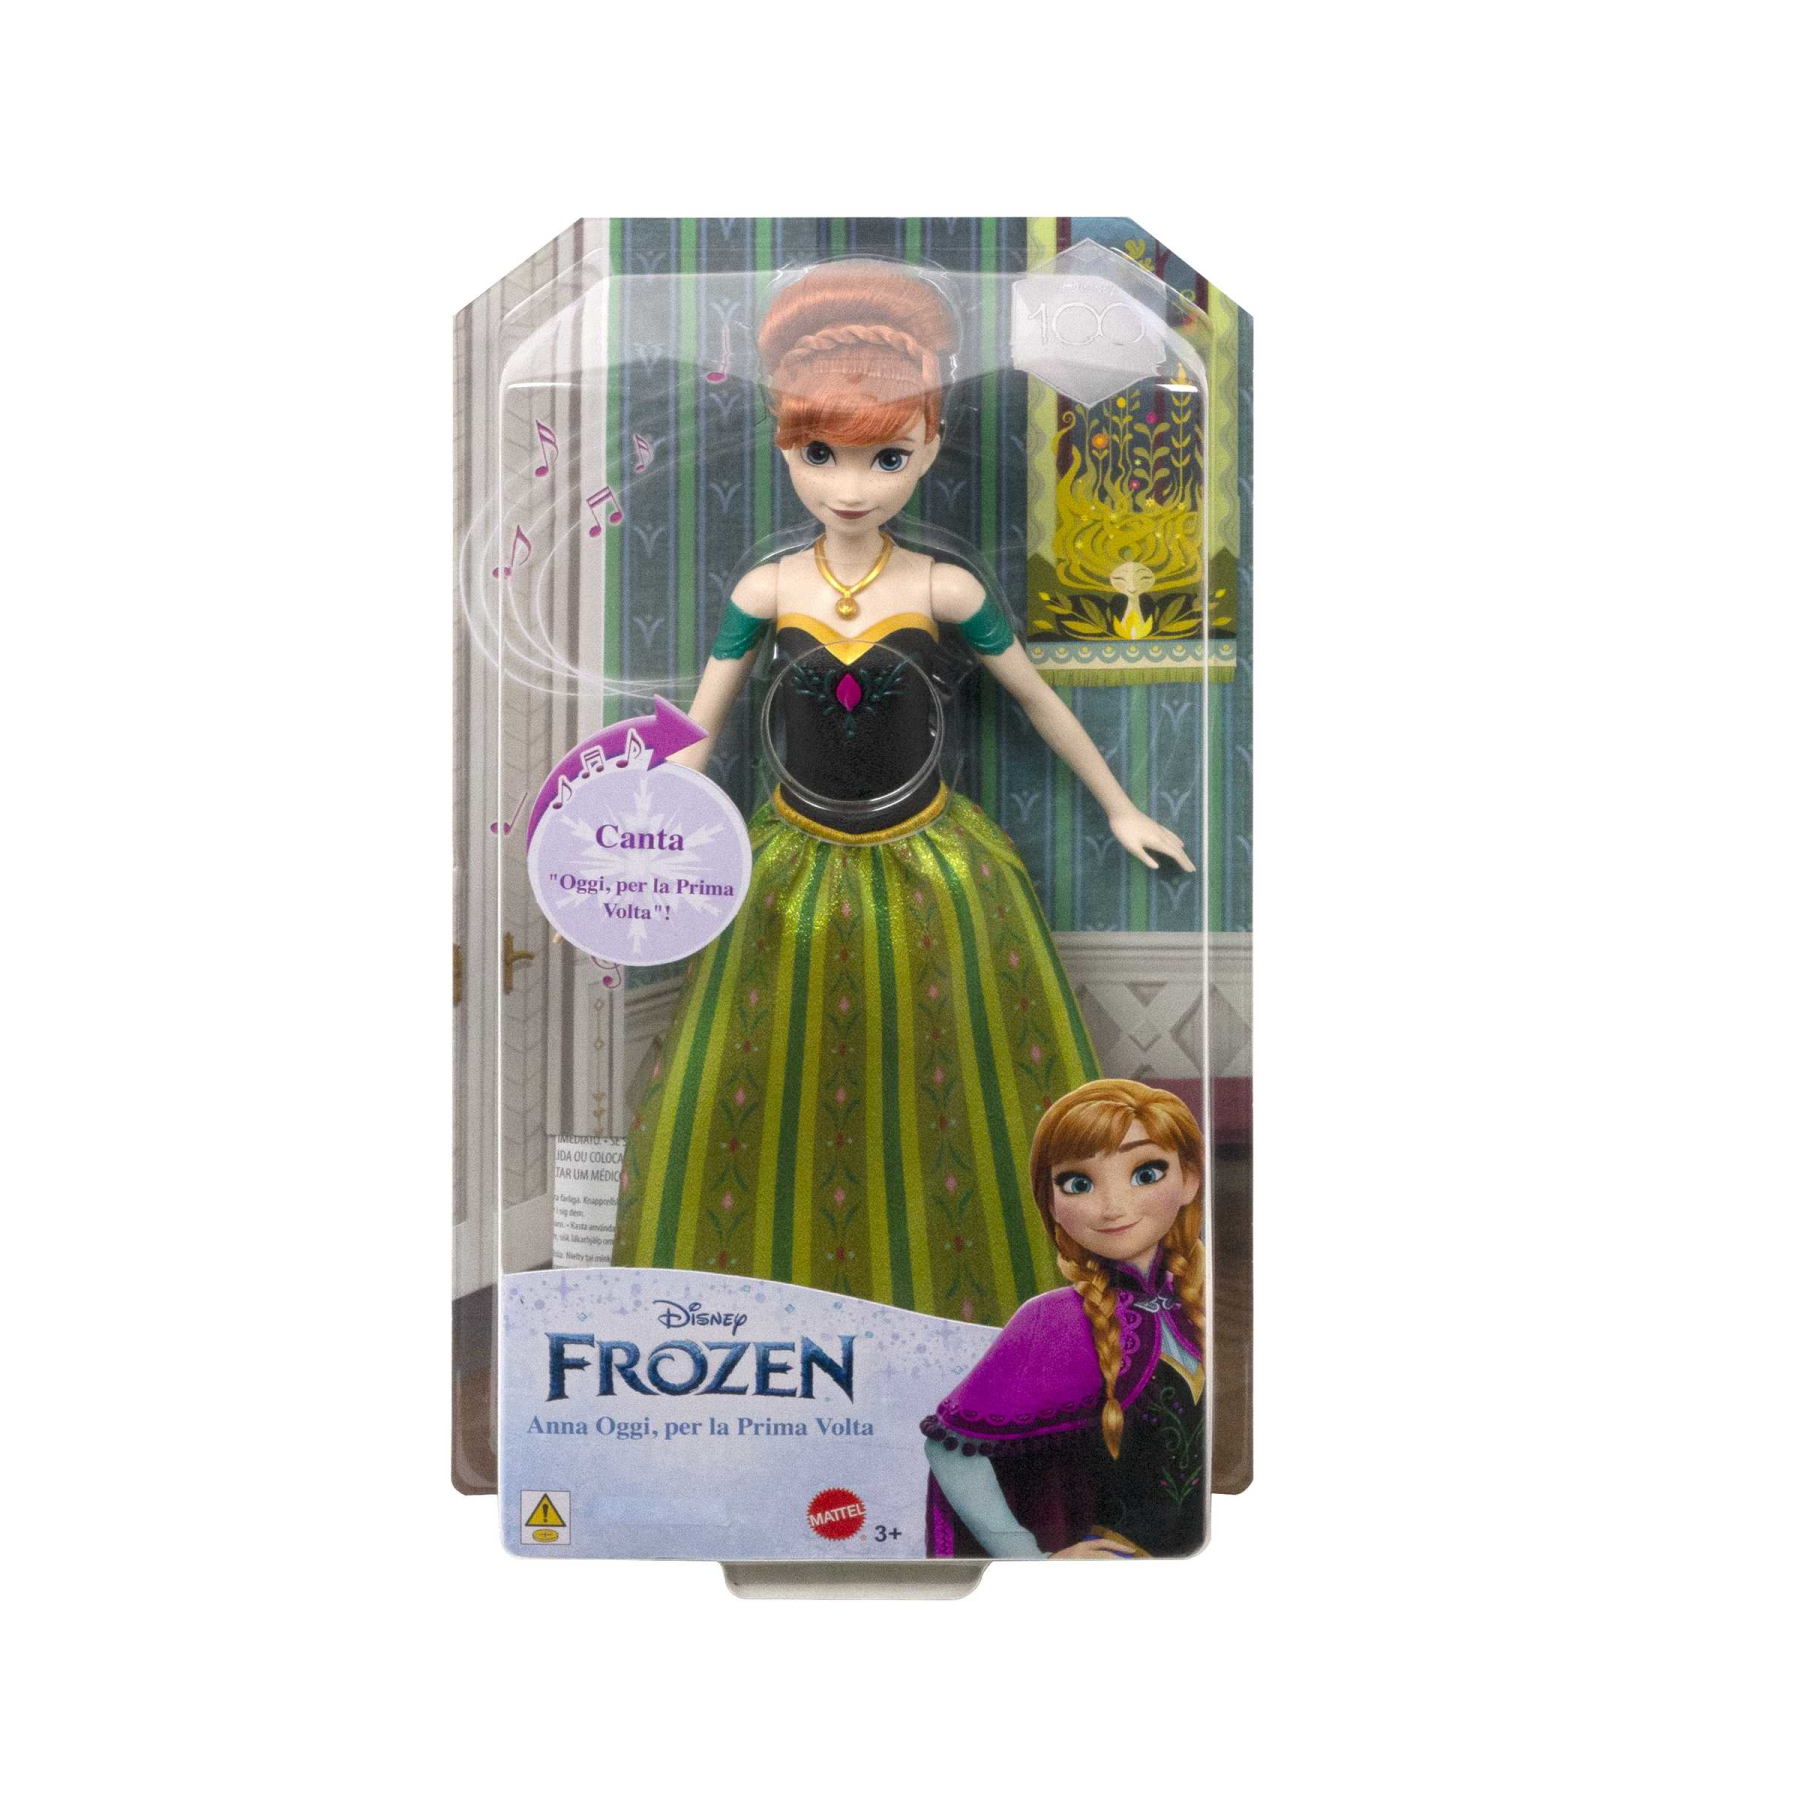 Disney frozen - anna oggi per la prima volta, bambola con look esclusivo, canta “oggi, per la prima volta” dal film disney frozen, giocattolo per bambini, 3+ anni, hmg42 - DISNEY PRINCESS, Frozen